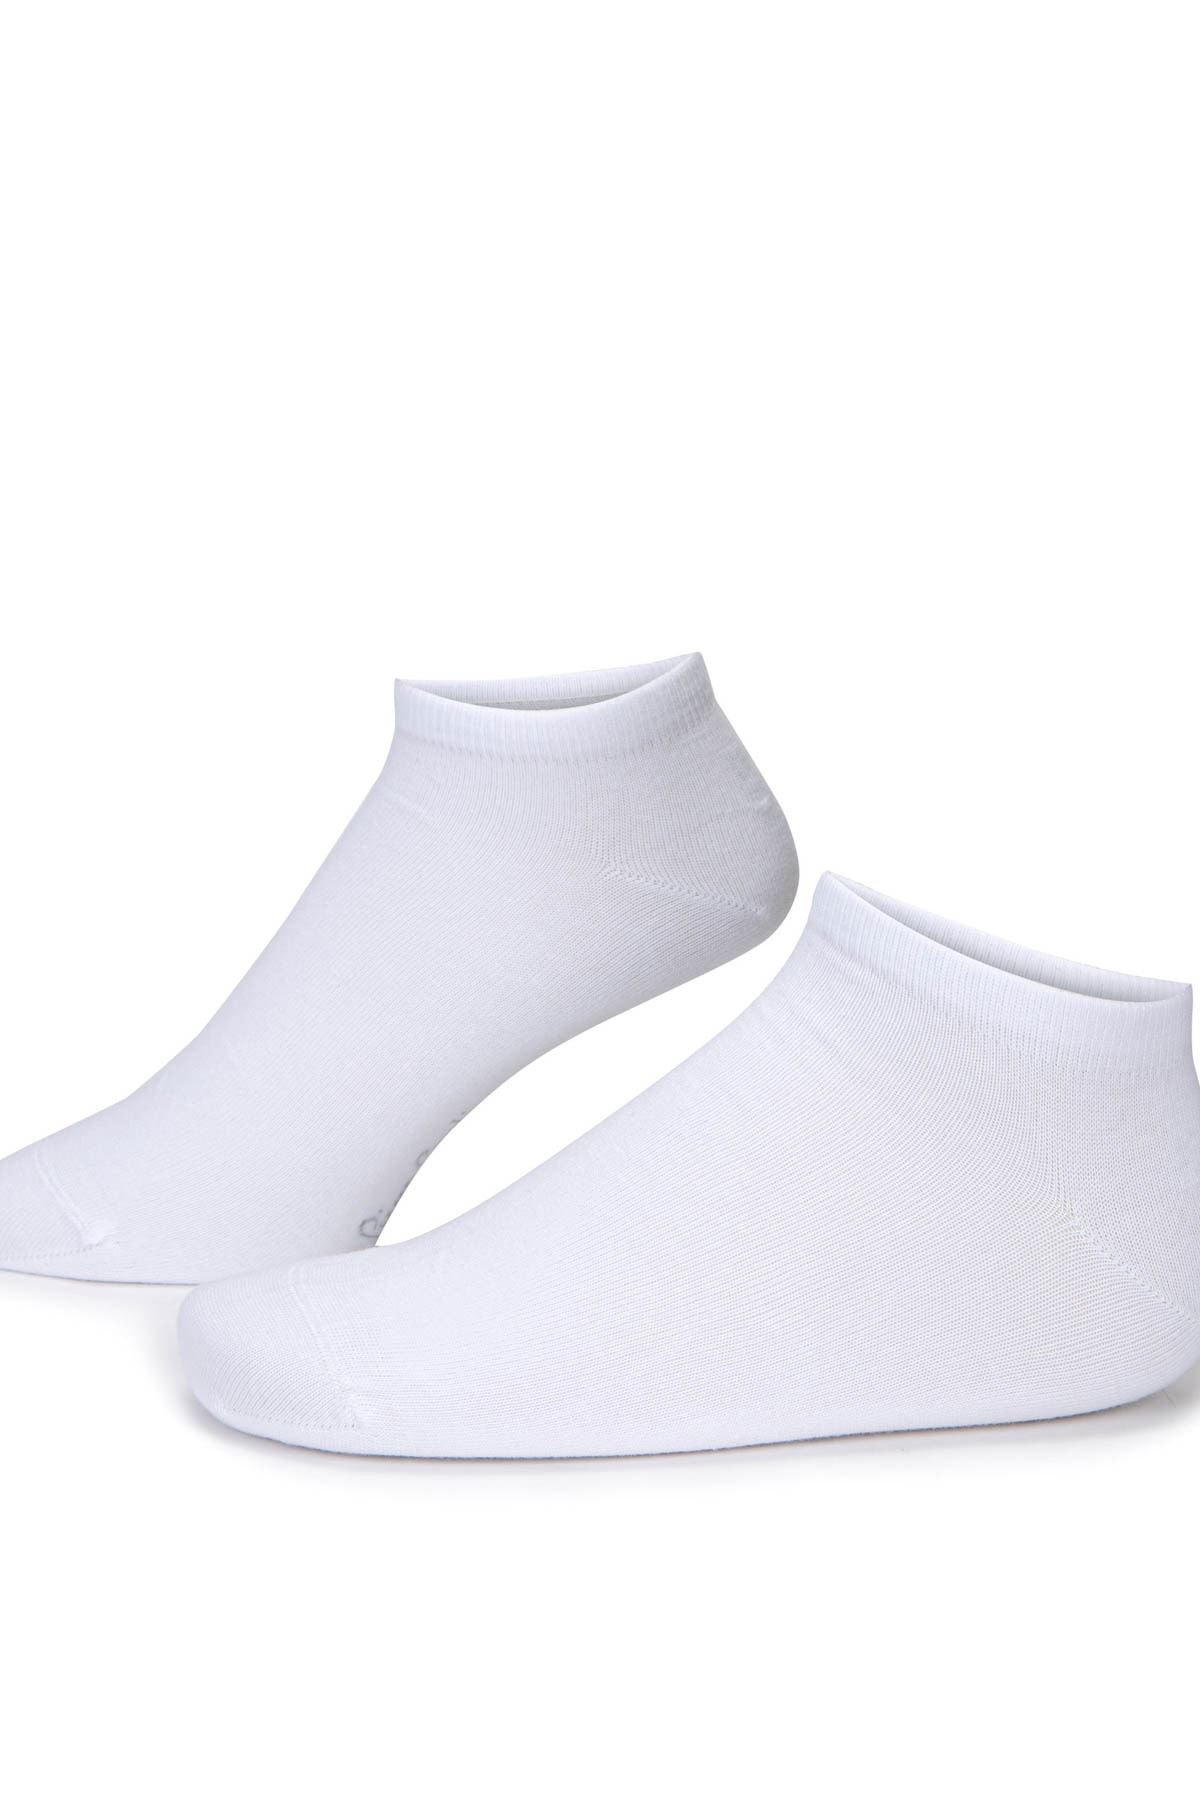  5 Adet Beyaz Erkek Patik Çorap (40-44)